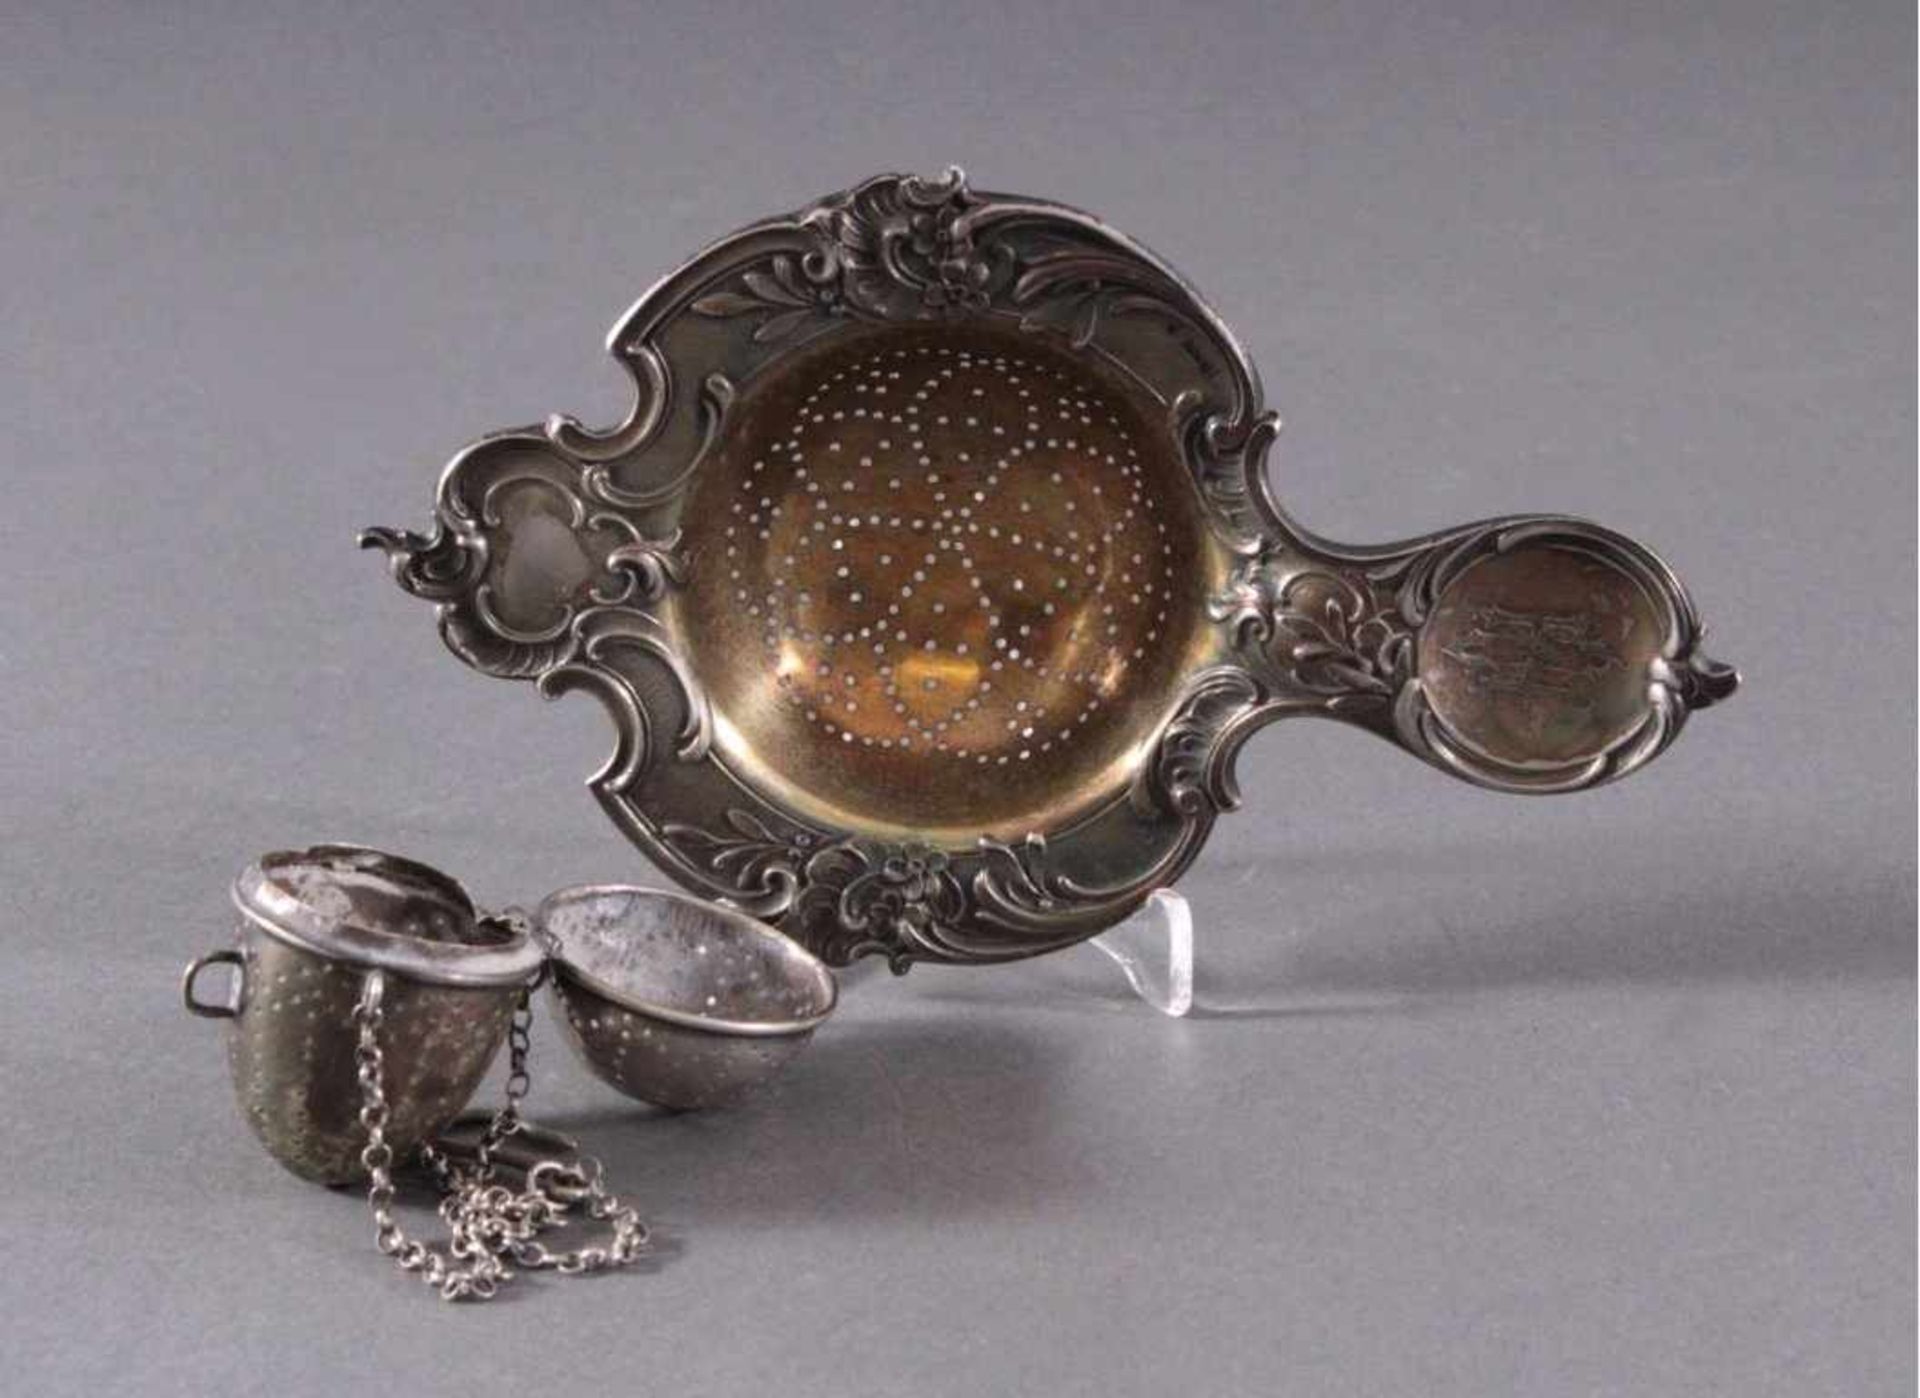 Silbernes Teesieb und Tee-EiReliefiertes Sieb, innen vergoldet, am Griff mit MonogrammCH, punziert